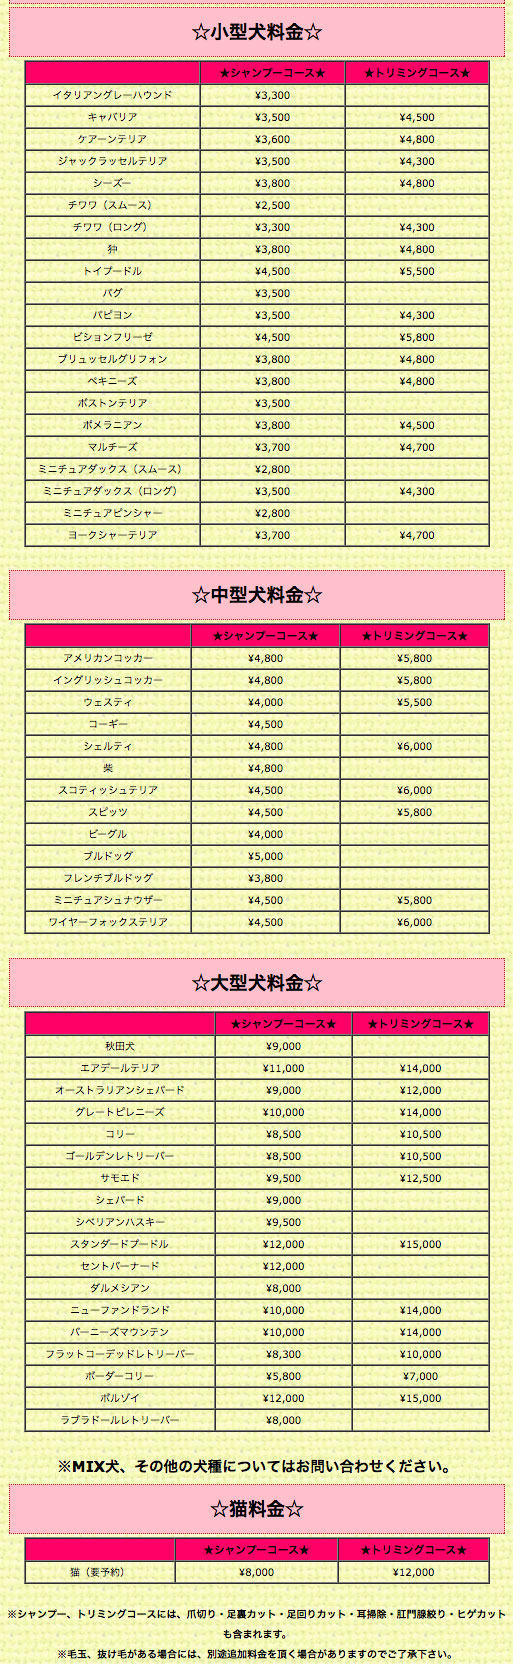 小型犬のトリミングは3500円から5800円